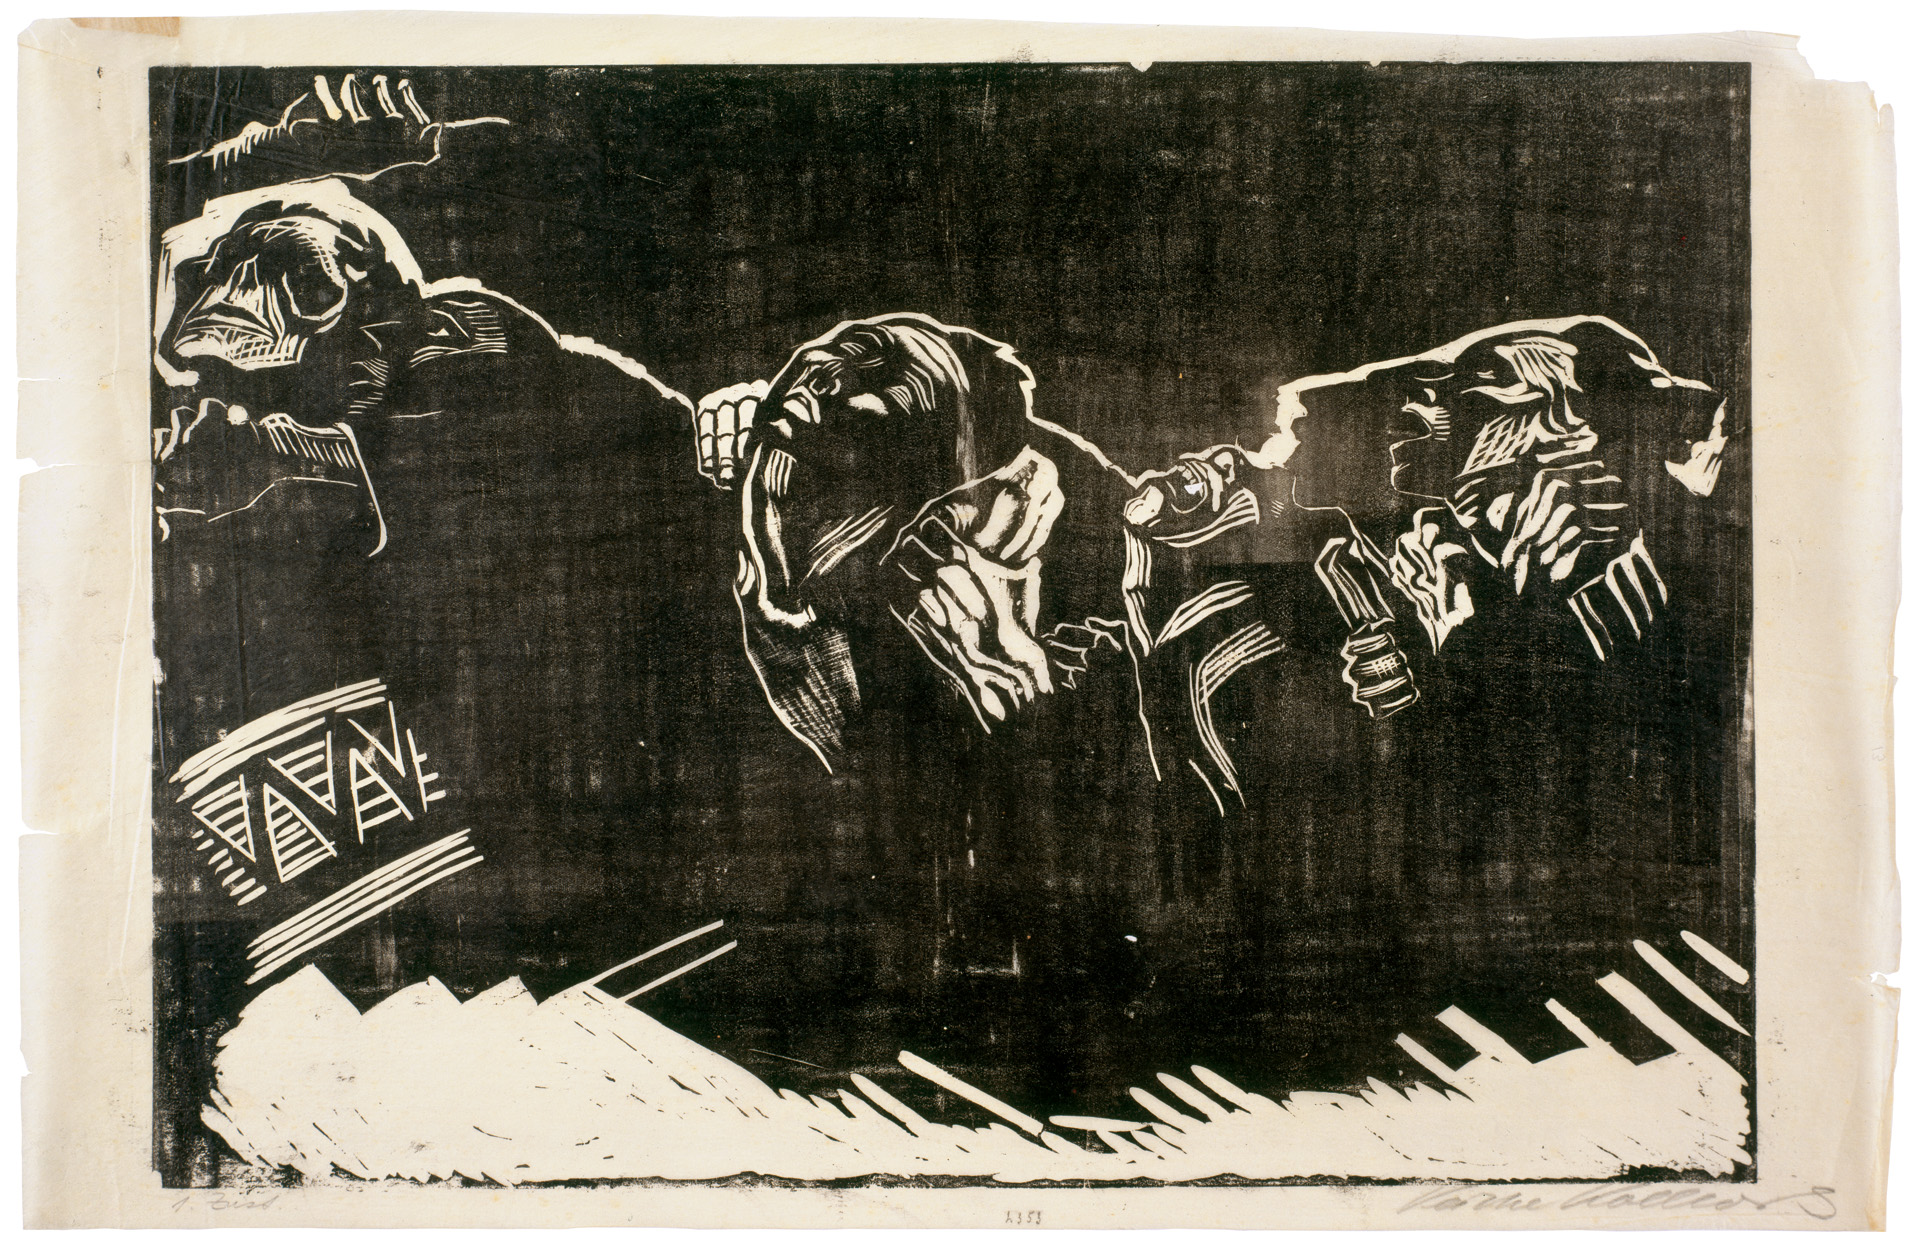 Käthe Kollwitz, Les Volontaires, planche 2 de la série »Guerre«, 1921/22, gravure sur bois, Kn 173 I, Collection Kollwitz de Cologne © Käthe Kollwitz Museum Köln